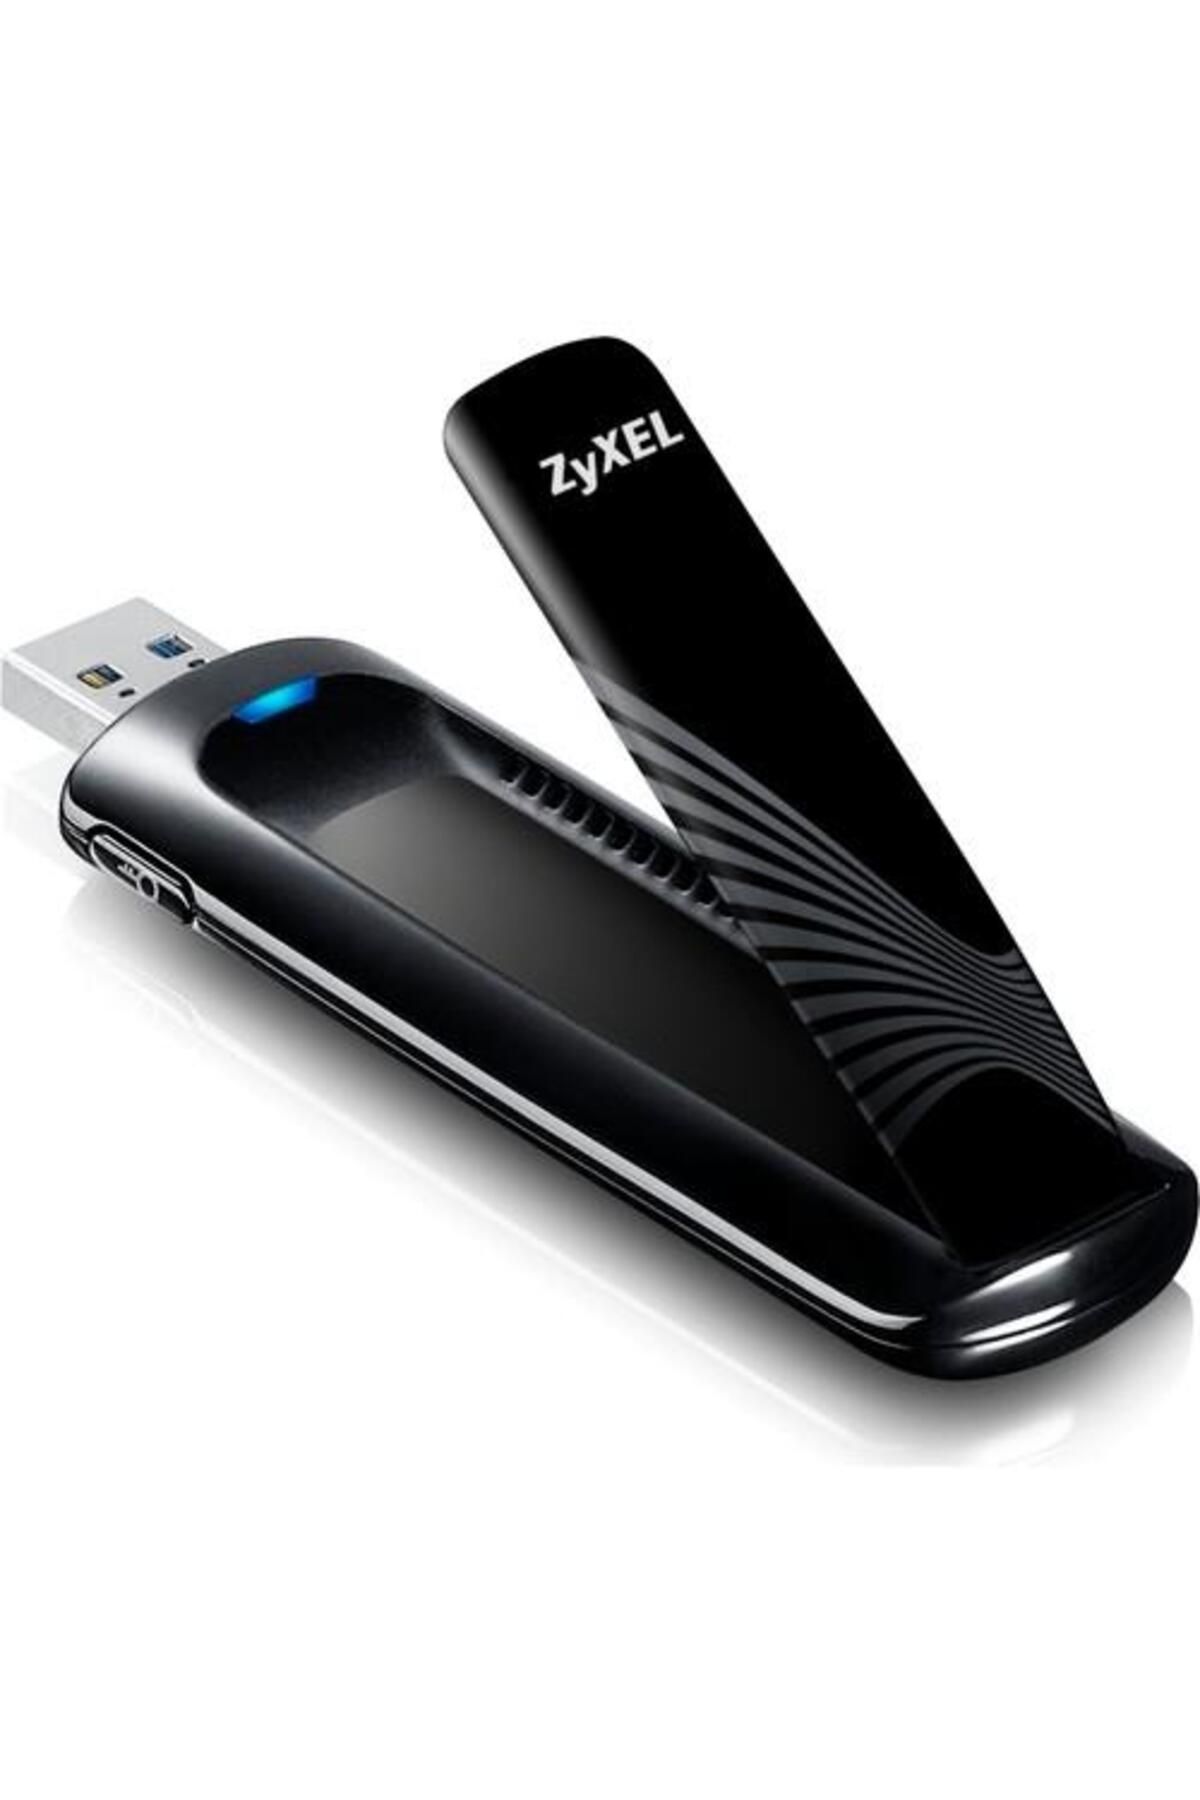 Zyxel NWD6605 AC1200 2.4GHz&5GHz Kablosuz Dual Band AC 1200Mbps USB Adaptör